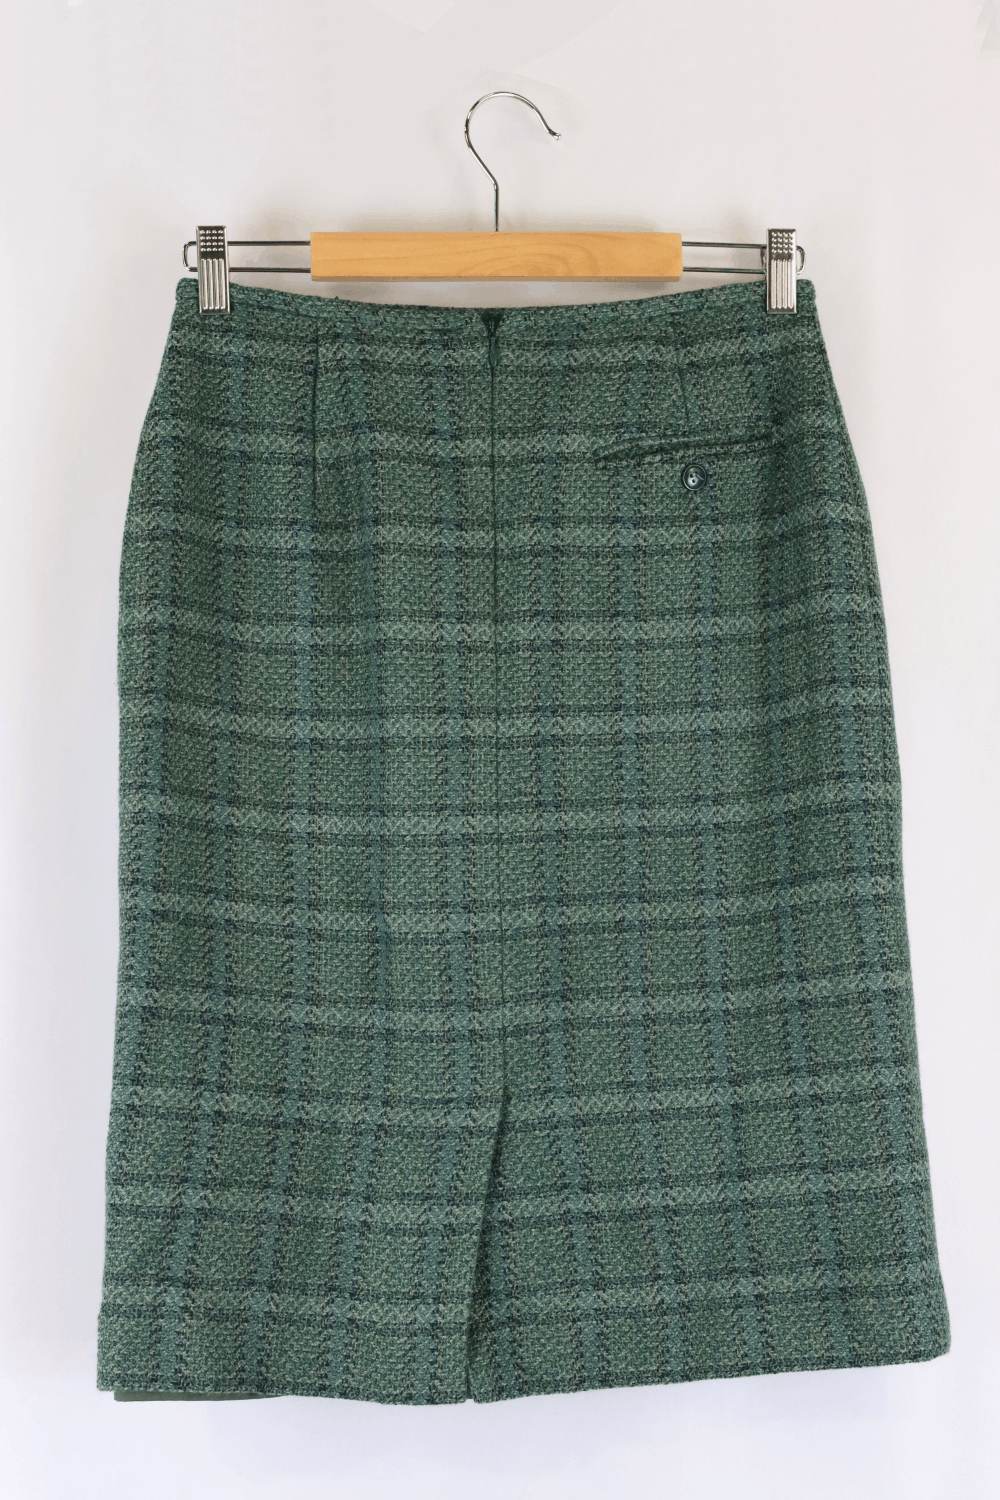 Jones New York Tweed Skirt Green 8